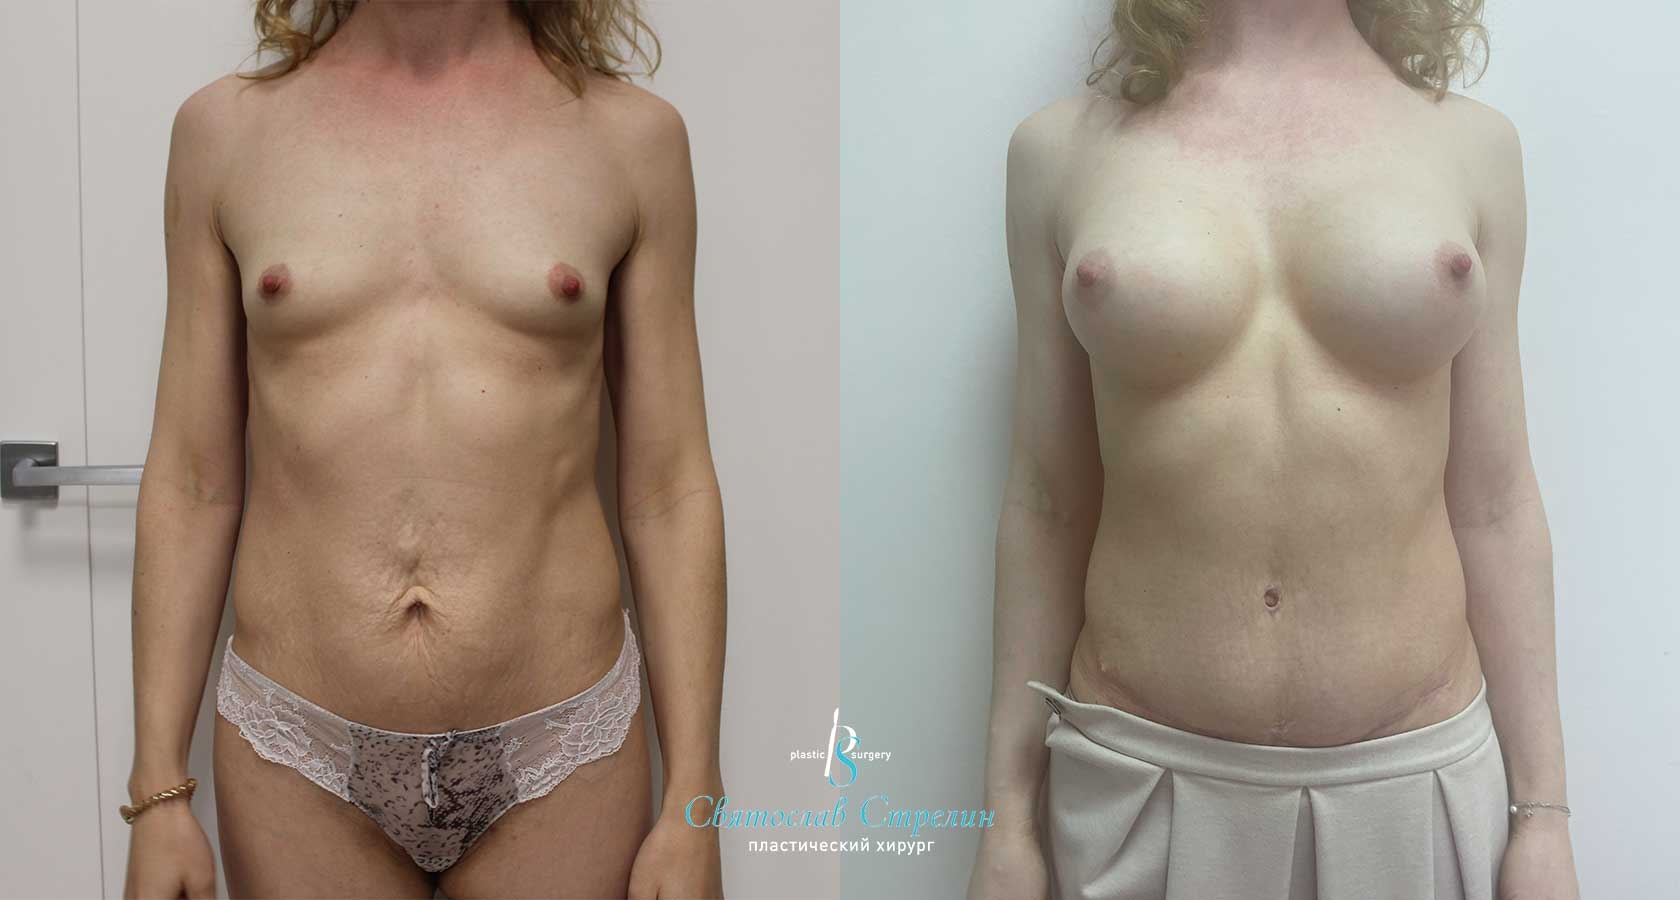 Абдоминопластика, увеличение груди через подмышечный доступ, 6 месяцев после операции